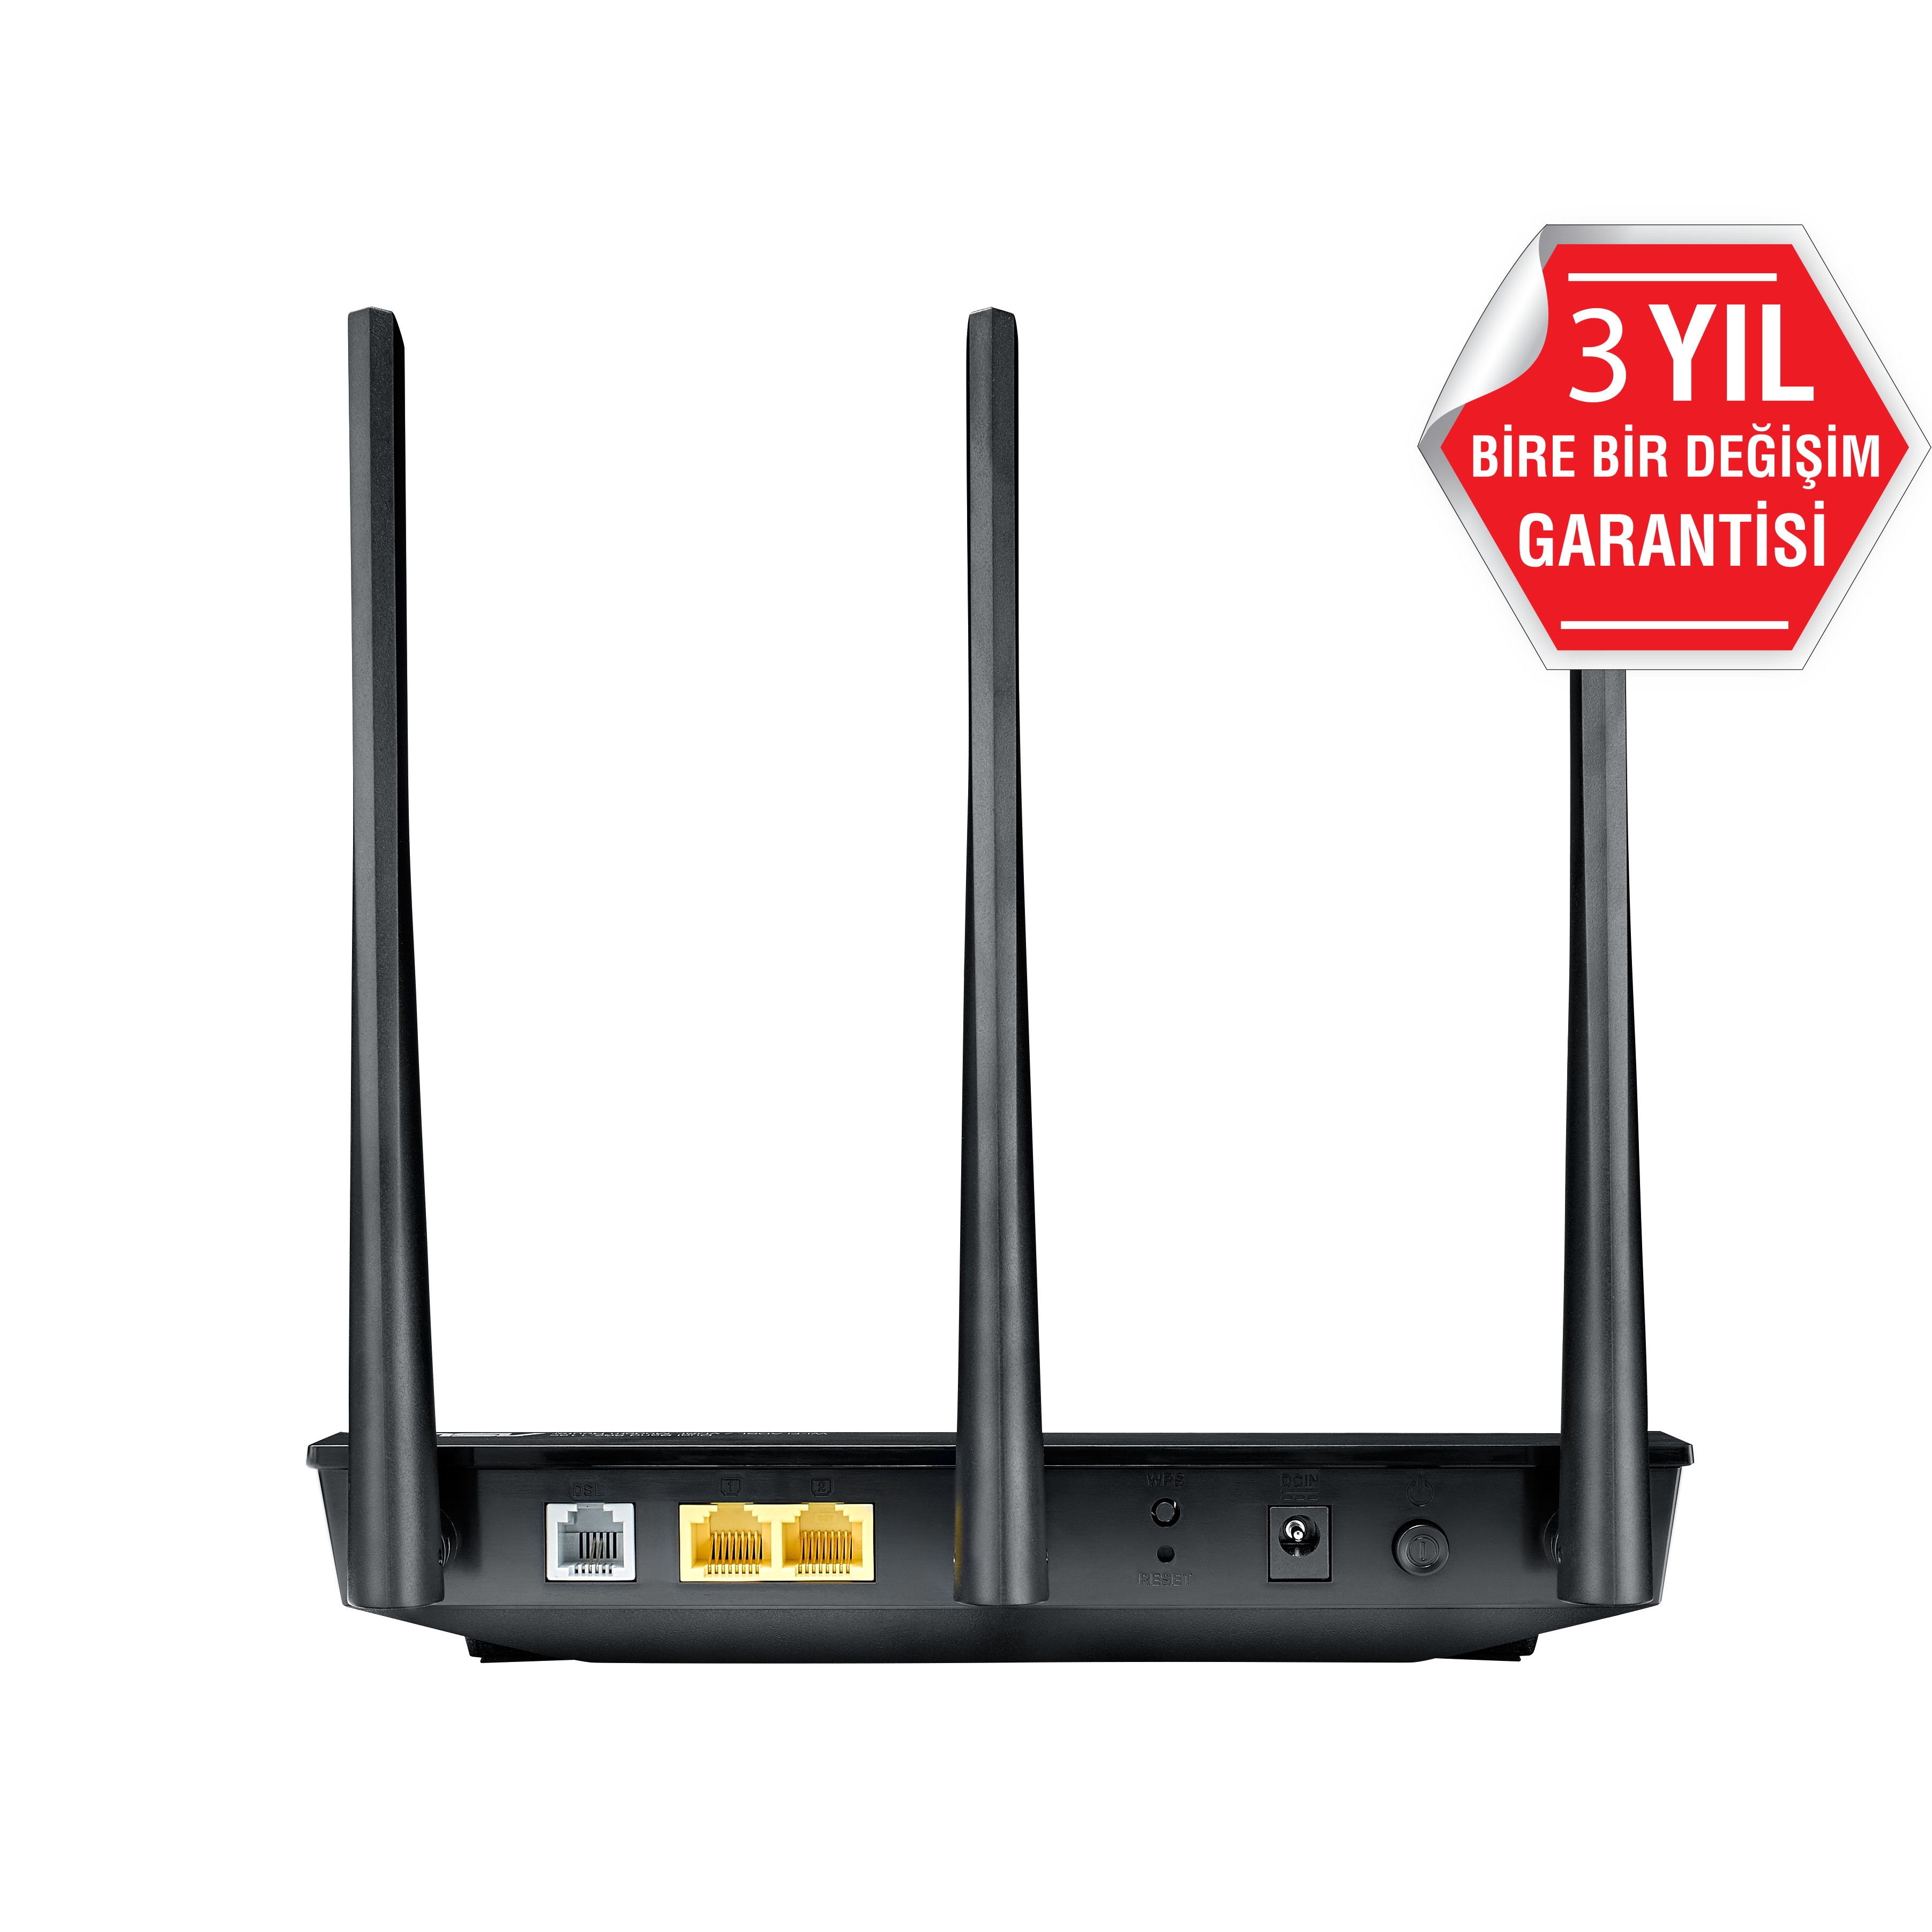 ASUS DSL-AC51 300Mbps+433Mbps 2 PORT 3 ANTEN VPN KABLOSUZ ADSL/ADSL+/VDSL2 2.4GHZ+5GHZ